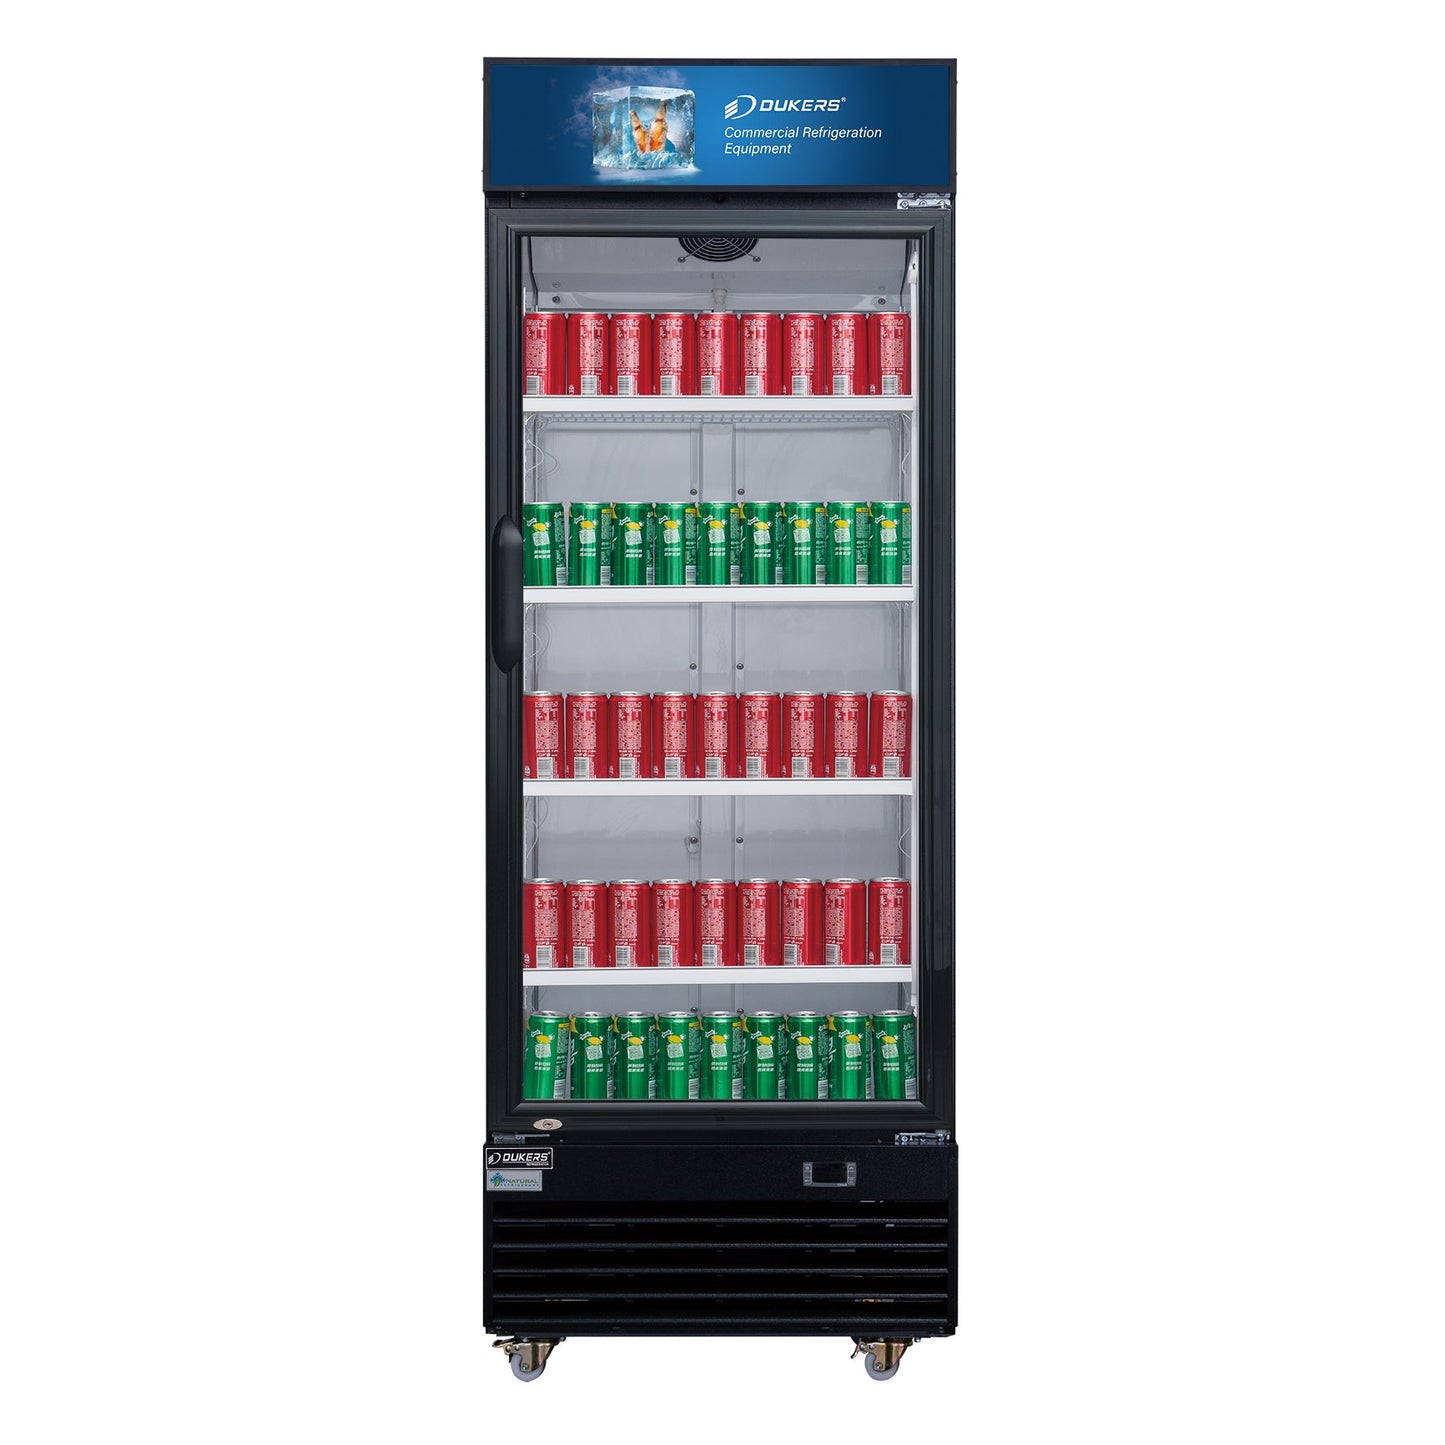 Dukers LG-430 14.7 cu. ft. Glass Swing Door Merchandiser Refrigerator